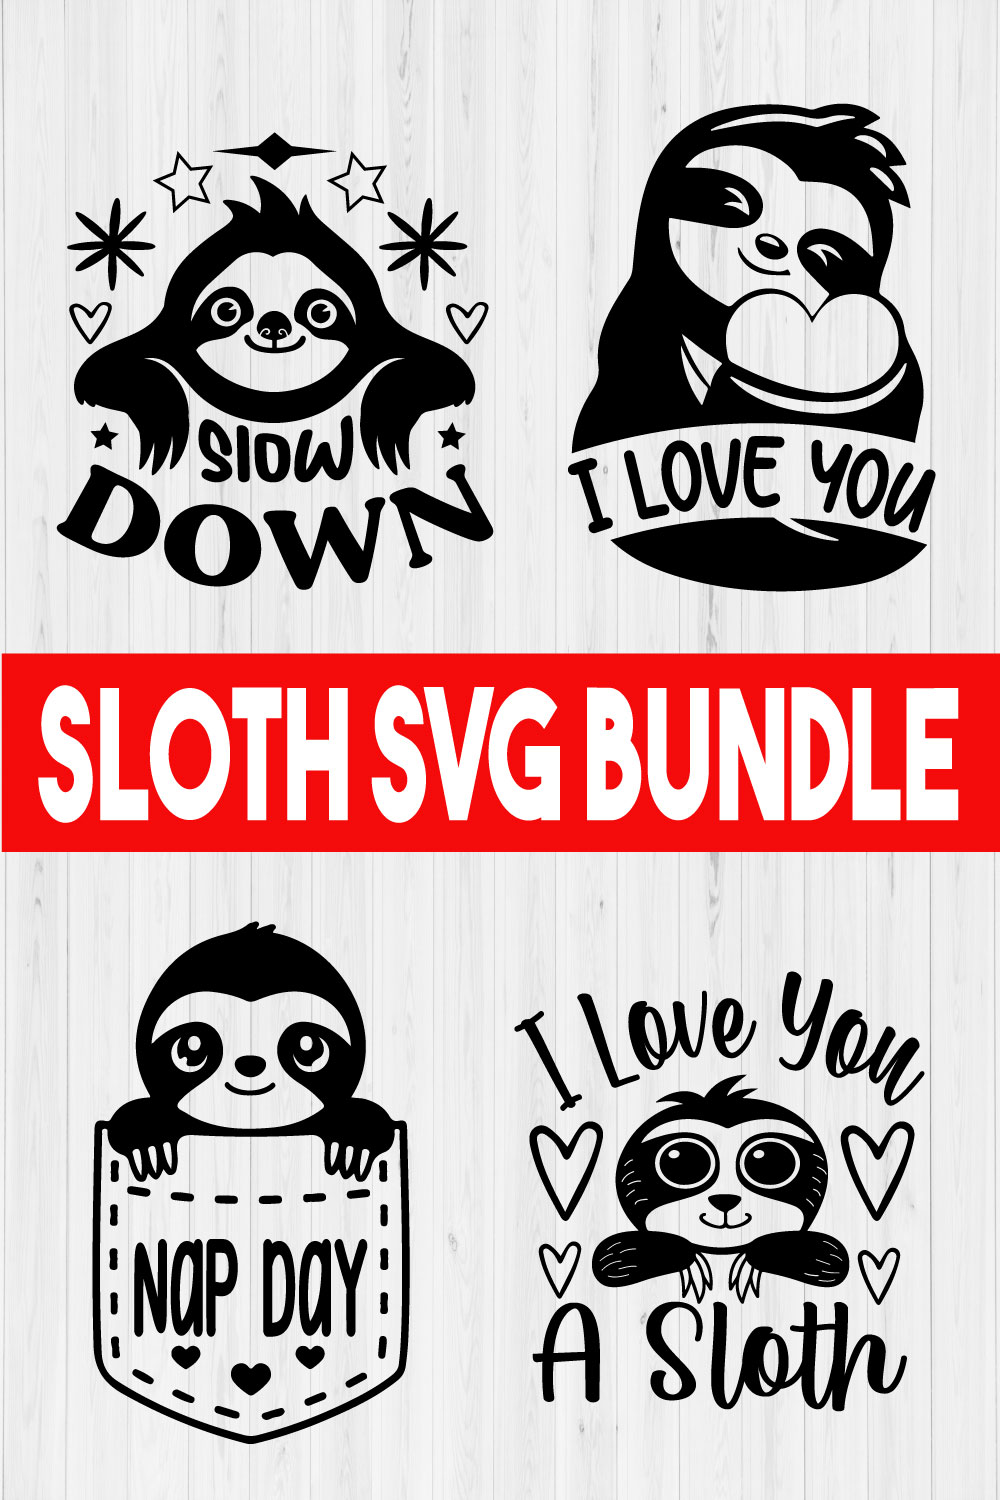 Sloth Svg Quote Bundle Vol3 pinterest preview image.